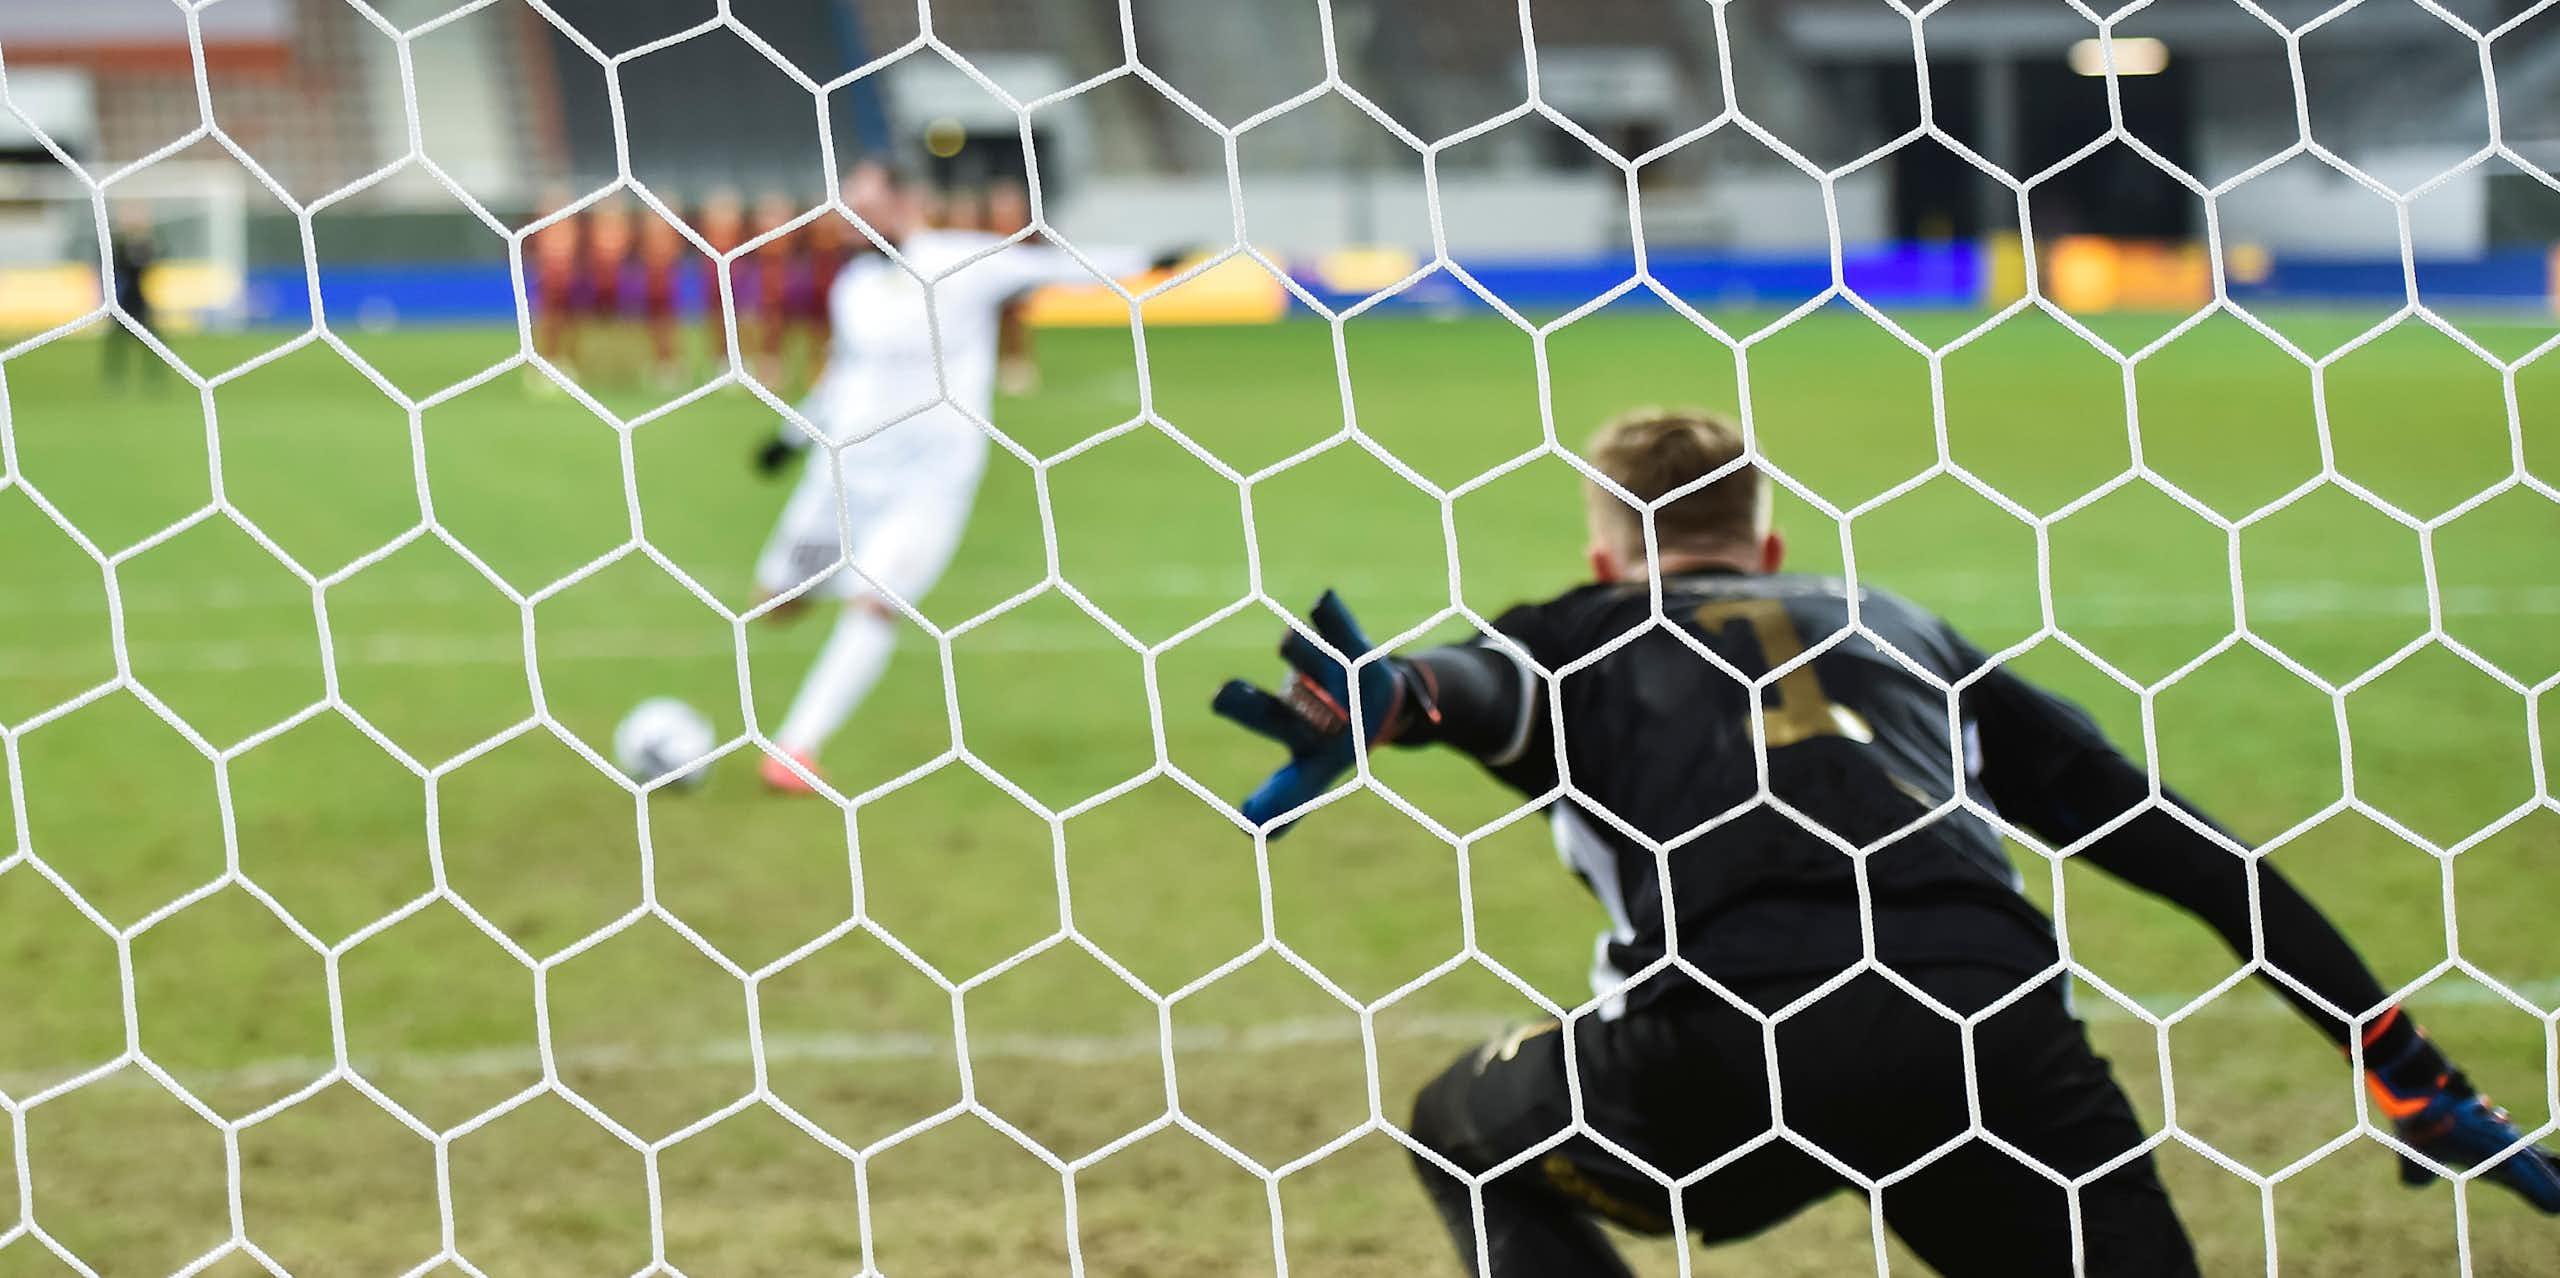 El lanzamiento de penaltis en el fútbol tiene más de ciencia que de “lotería”